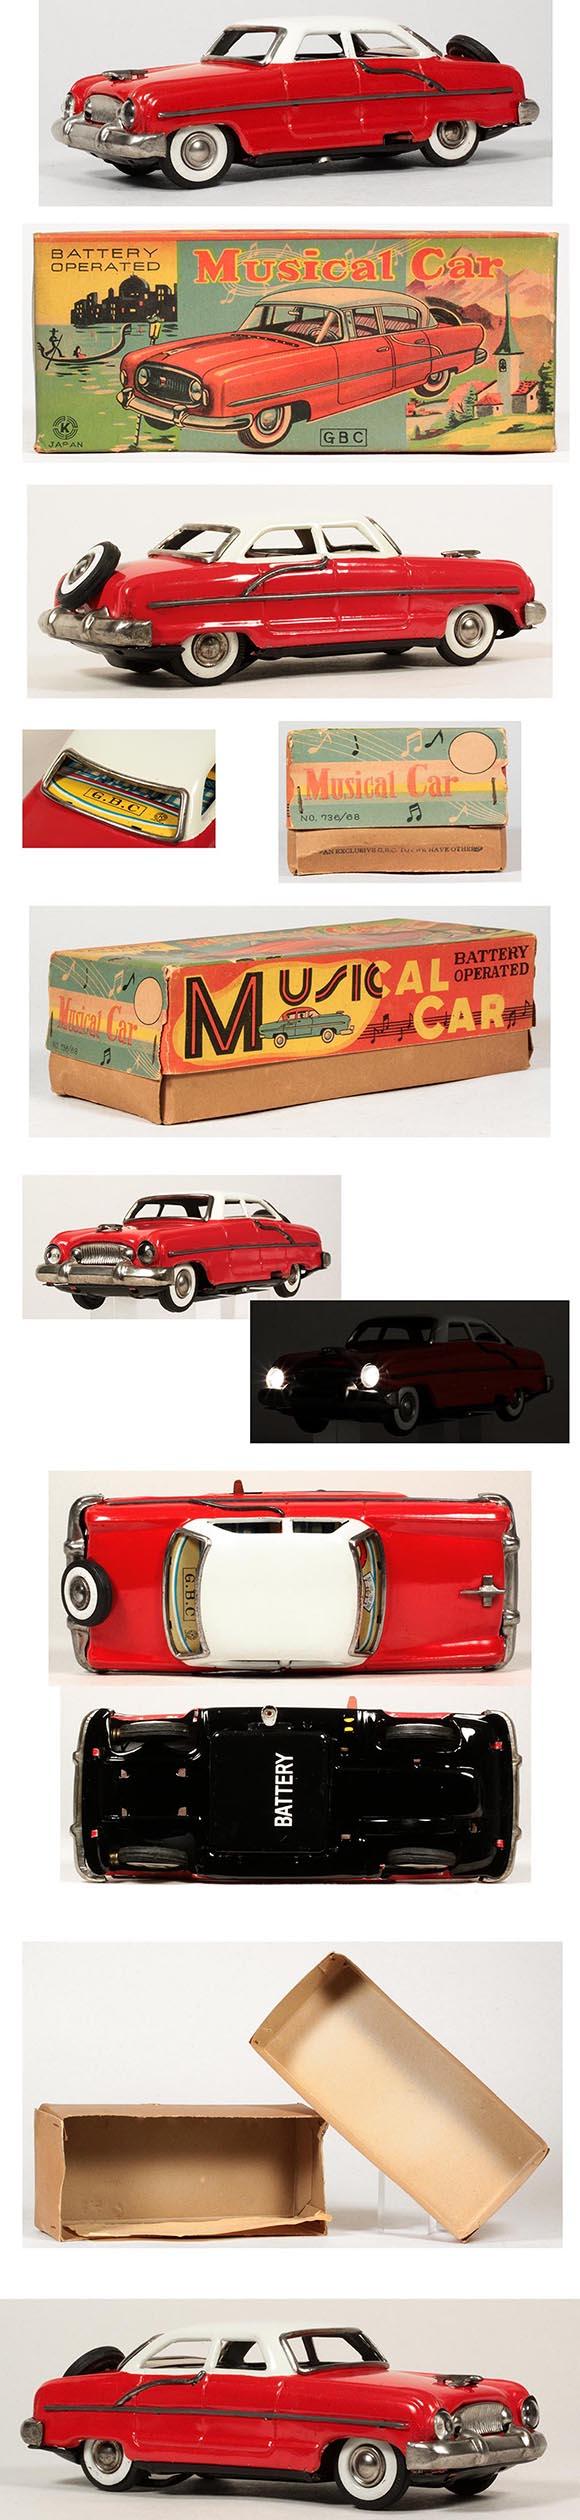 1956 Sankei Nash Ambassador Musical Car in Original Box